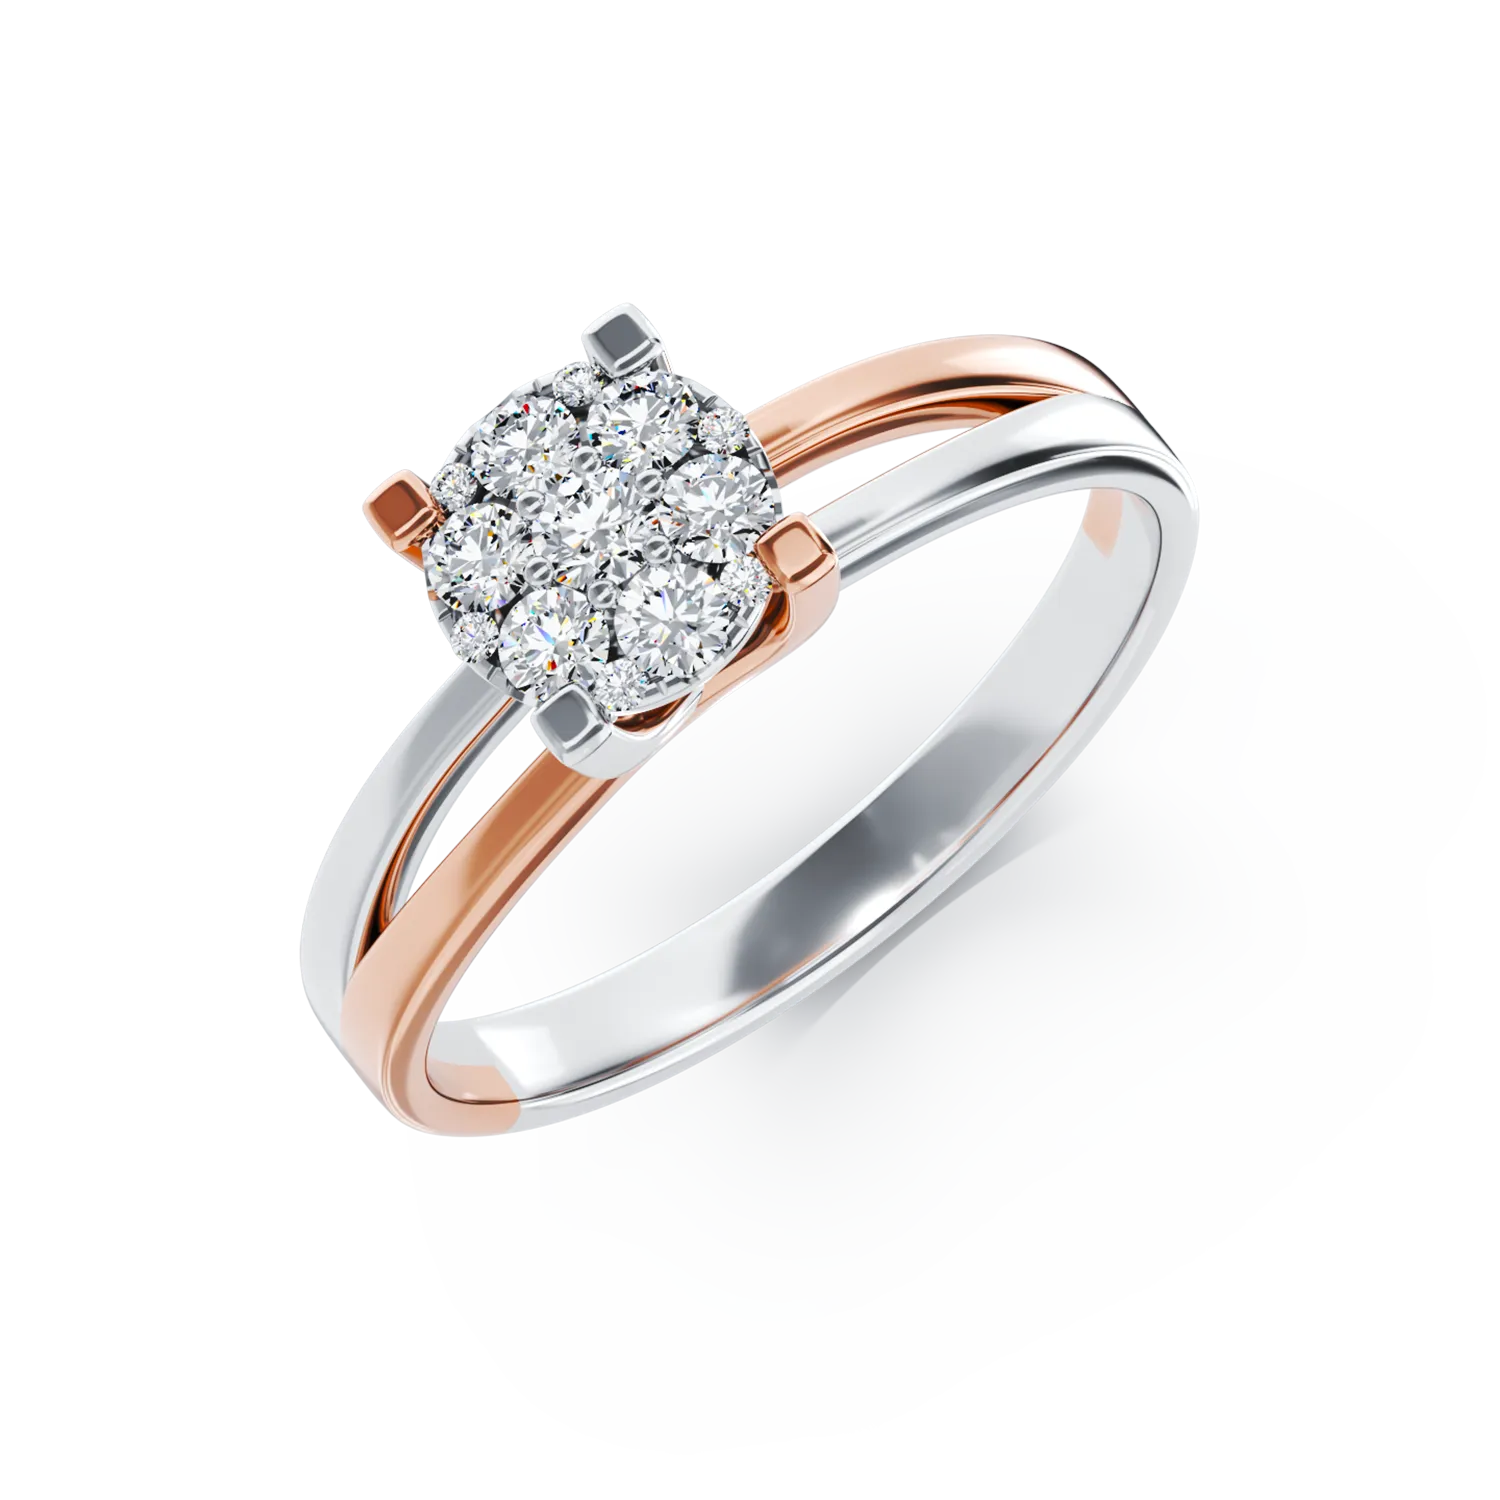 Eljegyzési gyűrű 18K-os fehér-rózsaszín aranyból 0.24ct gyémánttal. Gramm: 3,5